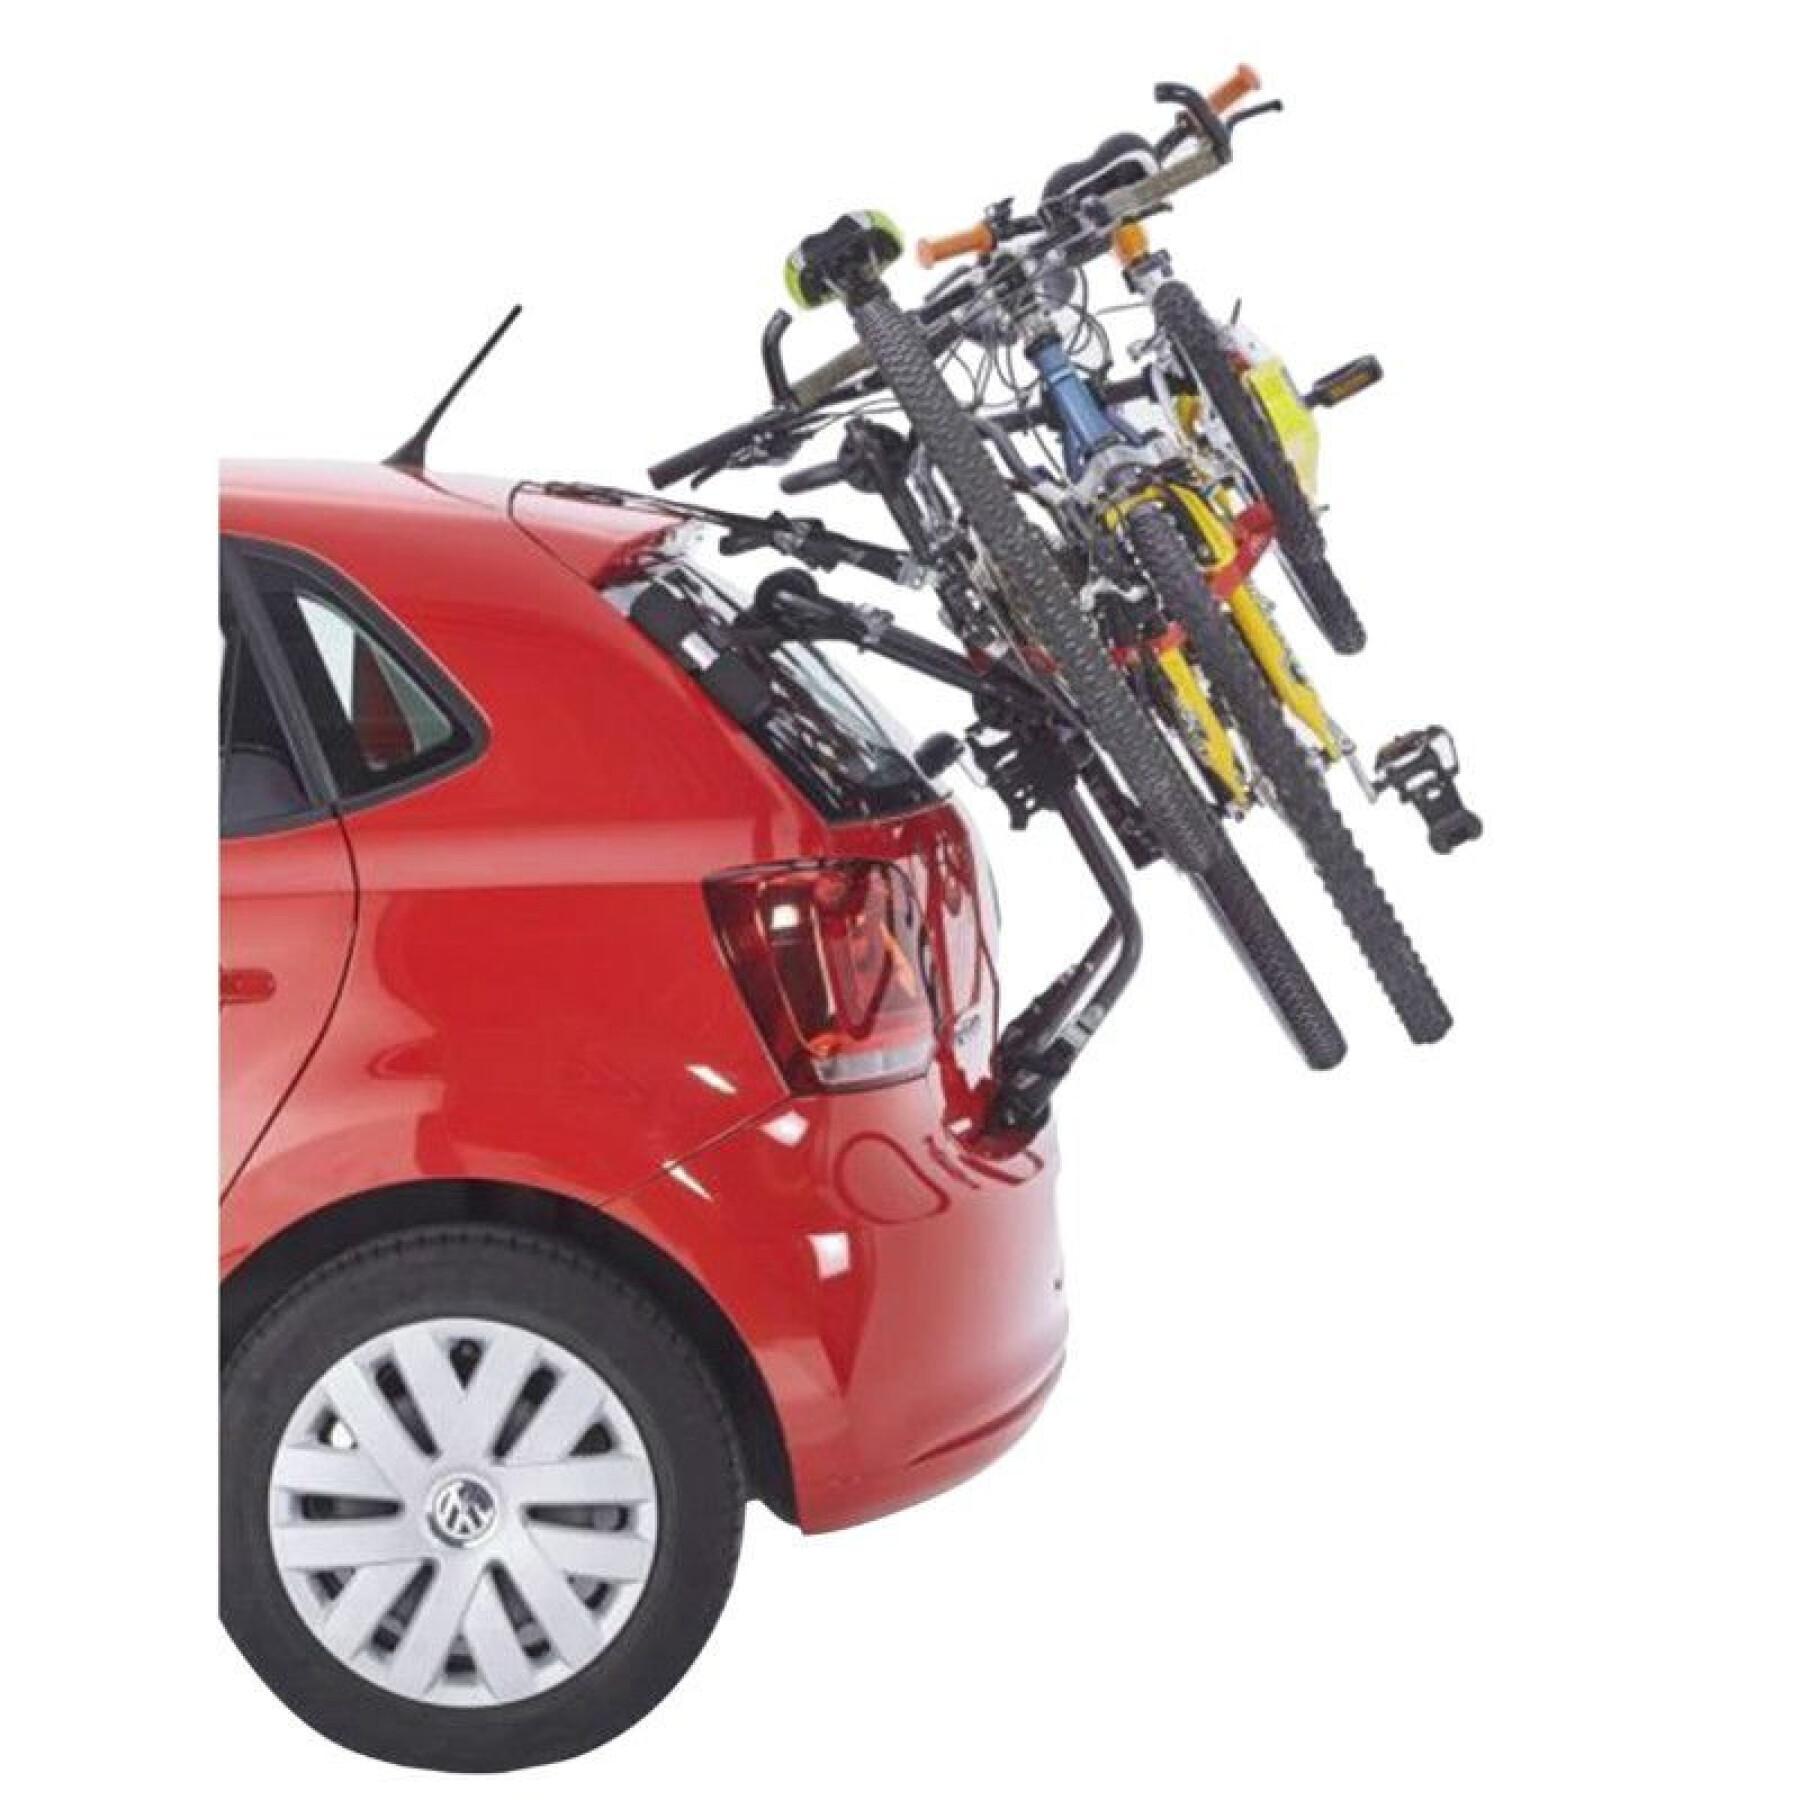 Kofferraum-Fahrradträger für 3 Fahrräder mit Platz für ein Fahrradschloss - kompatibel mit 320 neueren Fahrzeugen Mottez shiva-2 Homologue